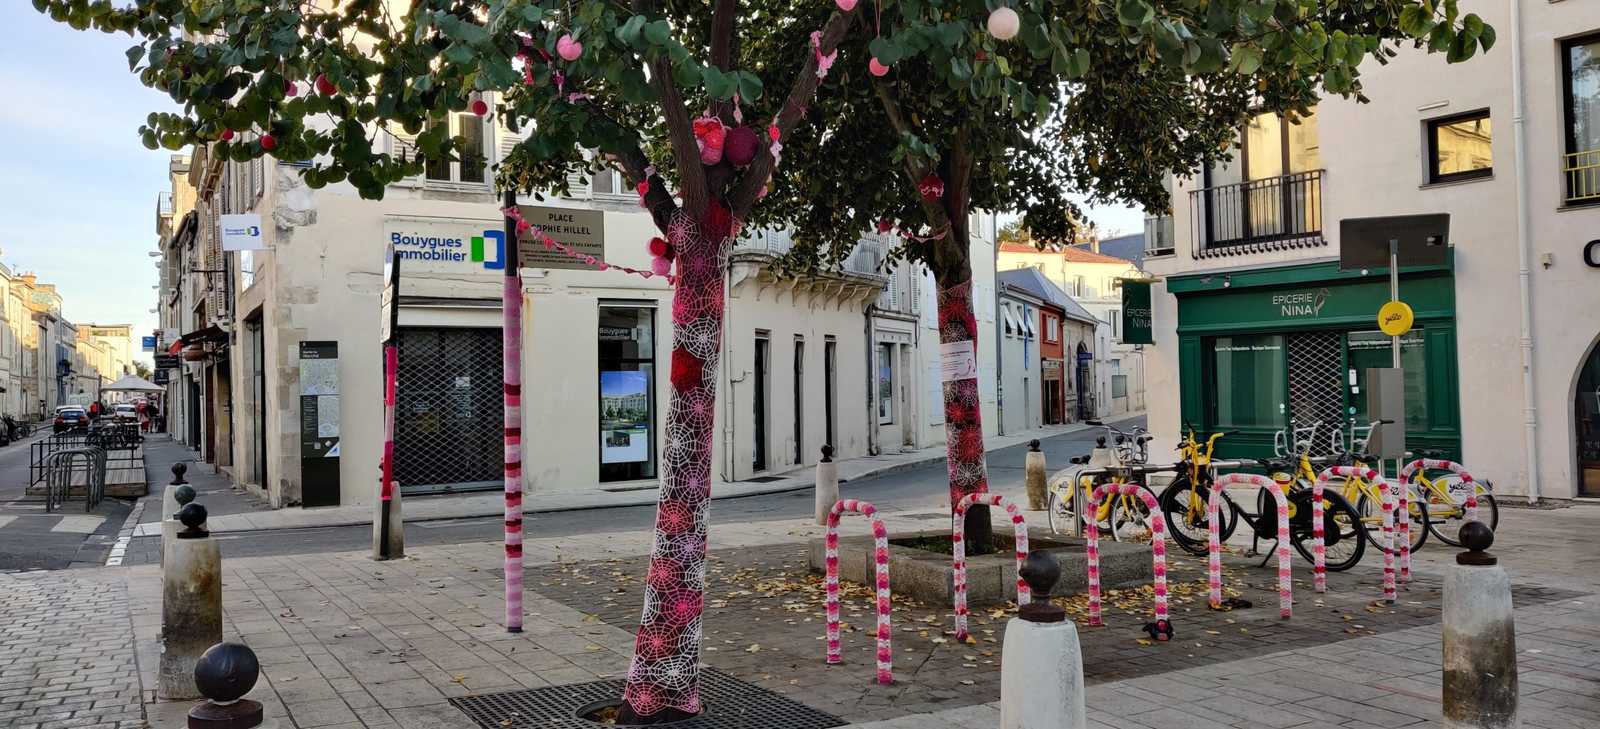 La Rochelle Urban Knitting Stadtkultur Urbanität Urbanauth Öffentlicher Platz Raumaneignung Strick Graffiti an Bäumen Fahrradständer bunte Farben Frankreich Europa